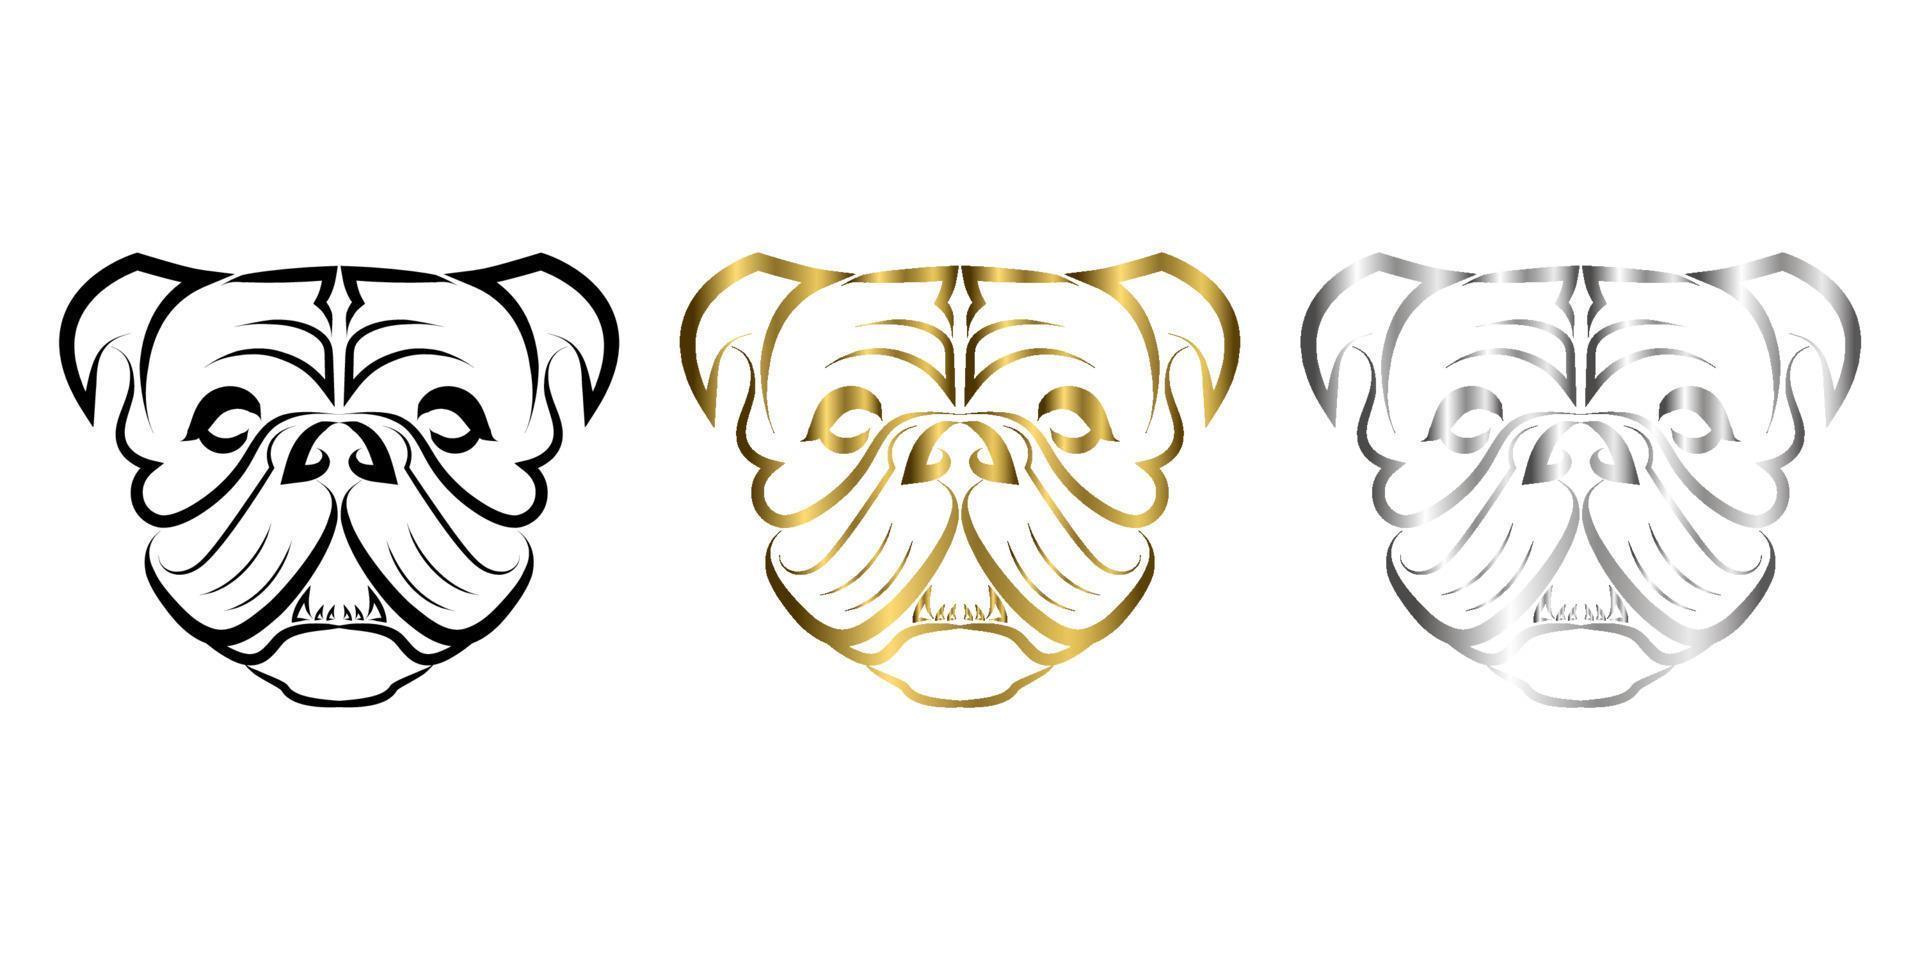 arte lineal de cabeza de perro bulldog o pug. Buen uso de símbolo, mascota, icono, avatar, tatuaje, diseño de camiseta, logotipo o cualquier diseño que desee. vector